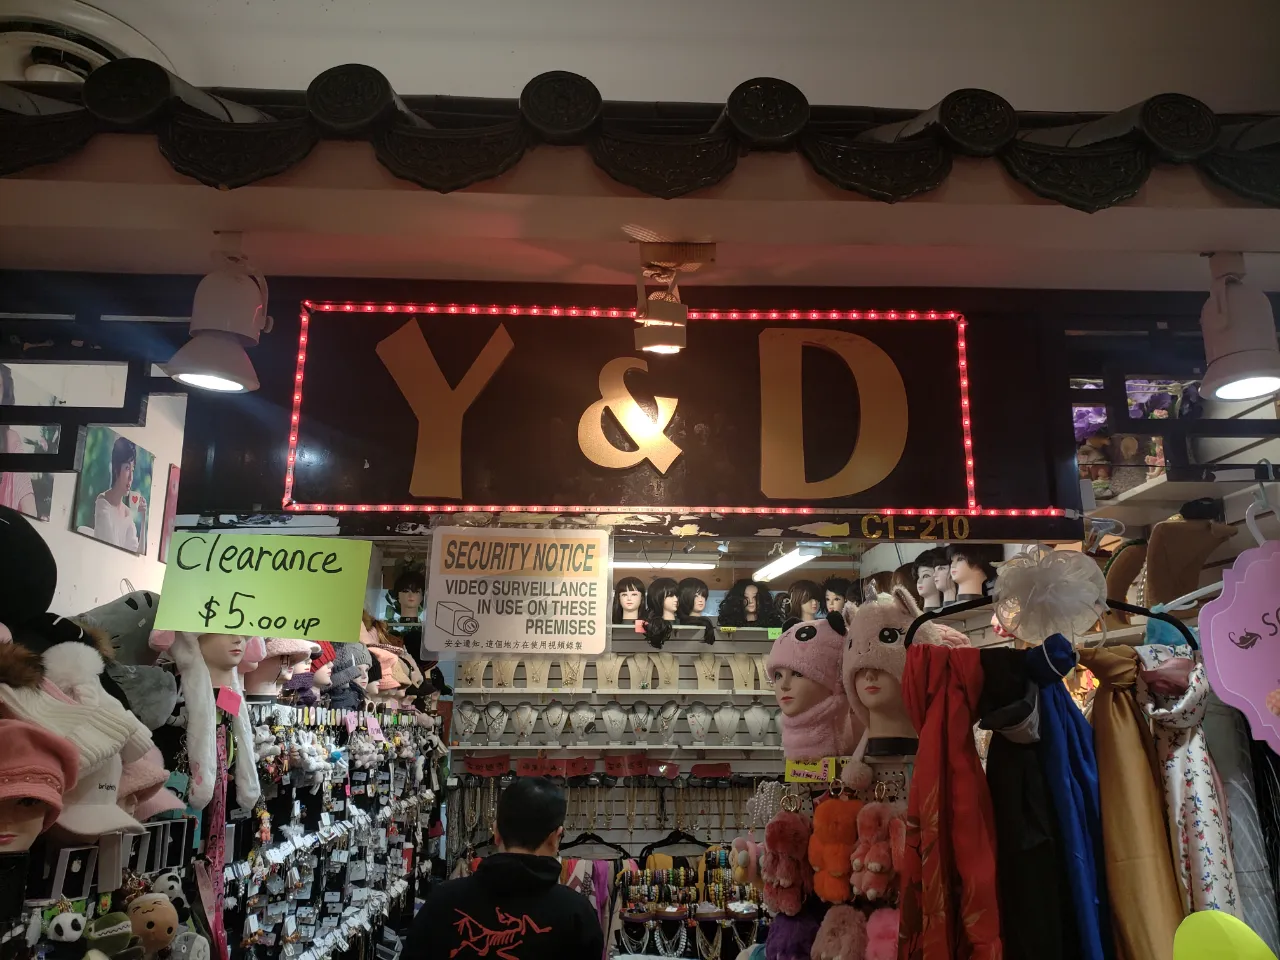 Y & D